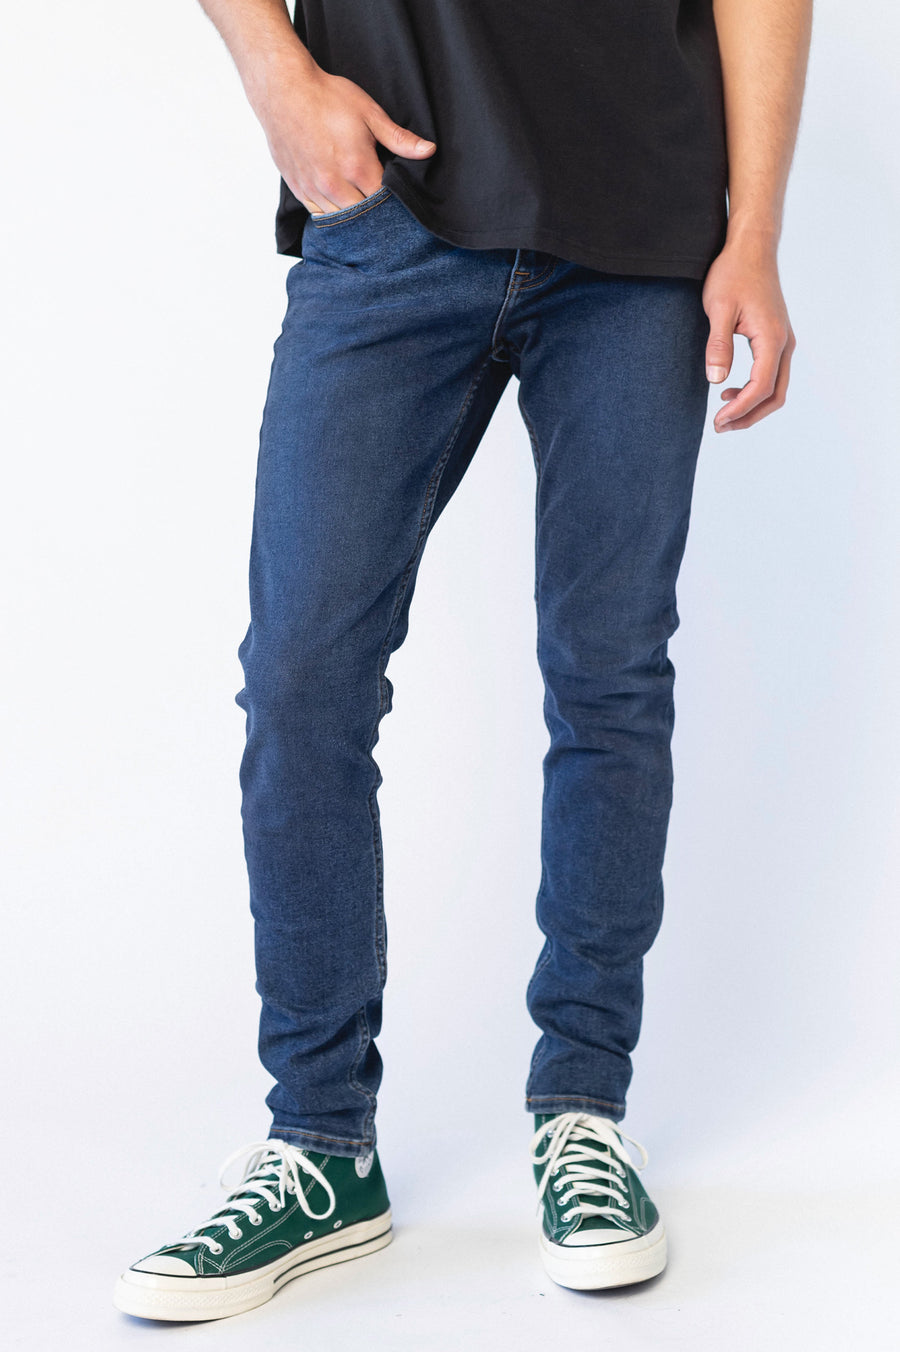 Chase Skinny Jeans - Moat Plain Dark Blue